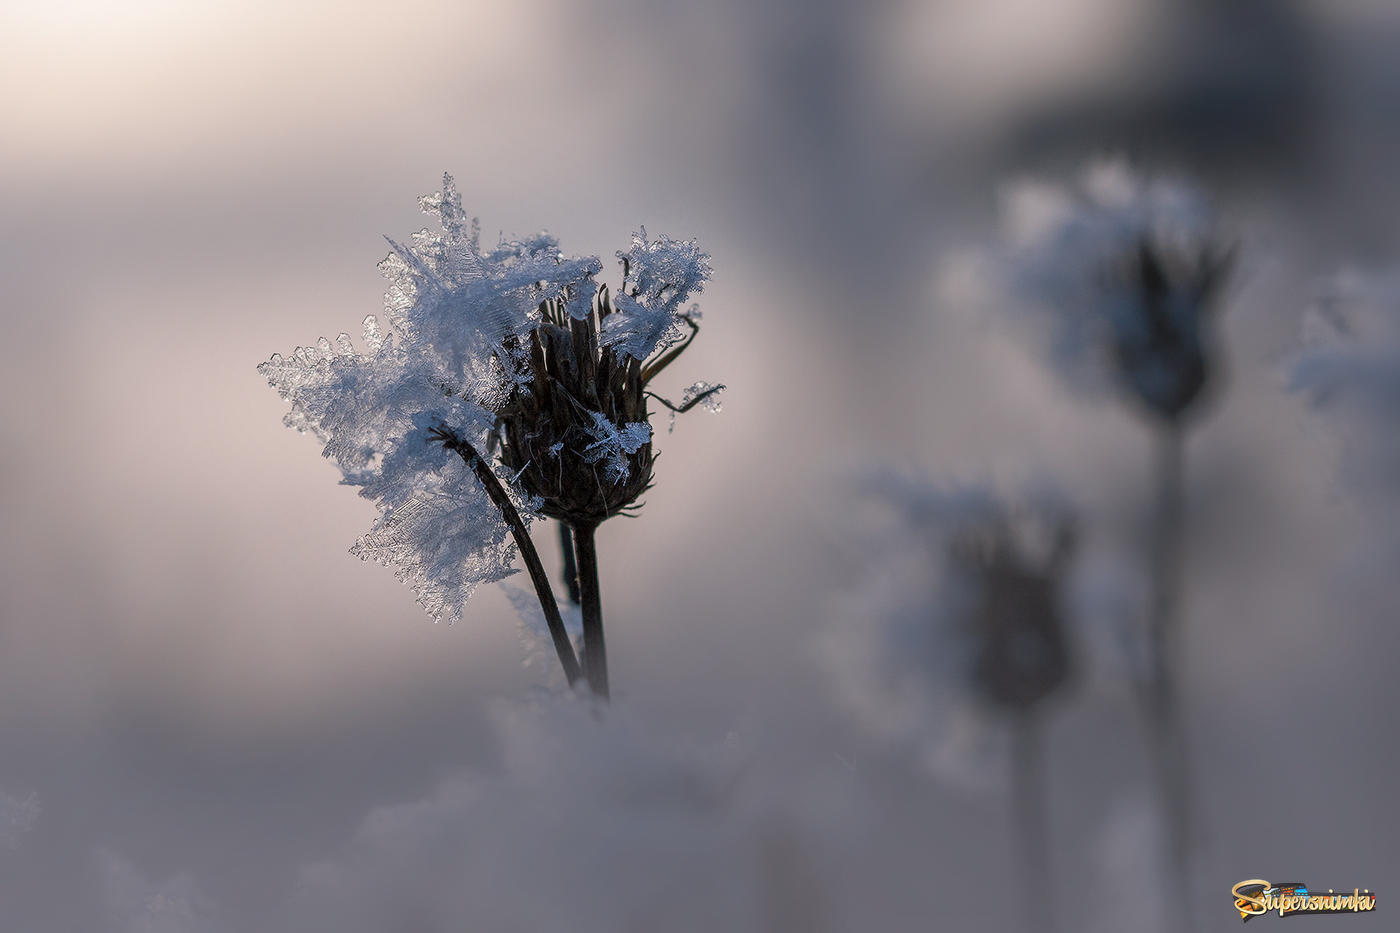  Ледяной цветочек